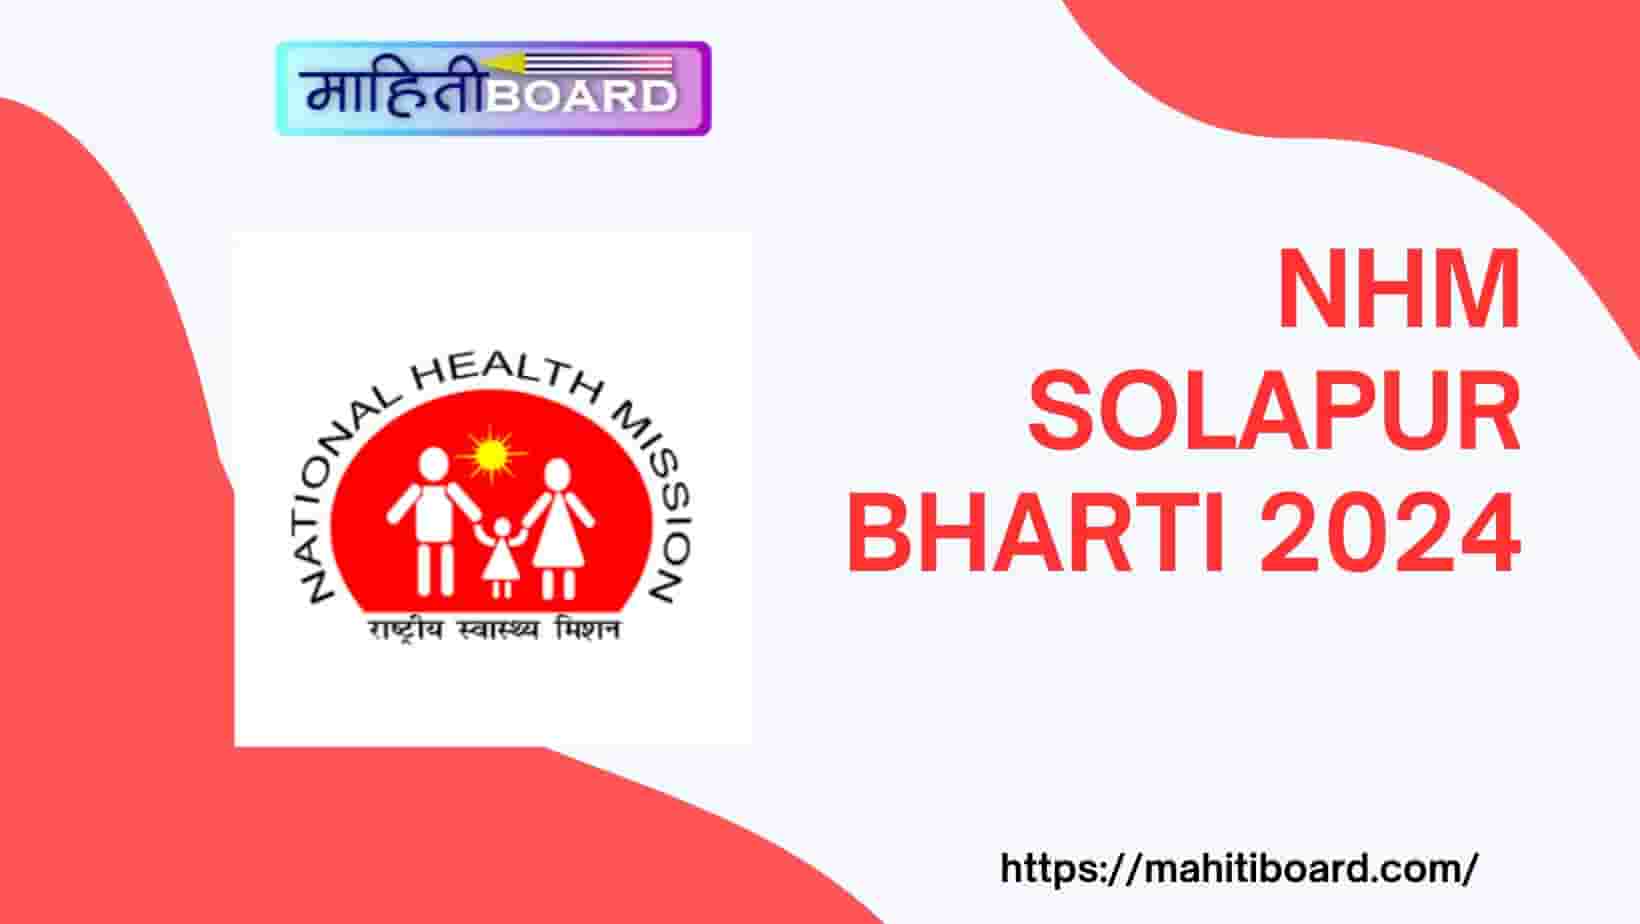 NHM Solapur Bharti 2024